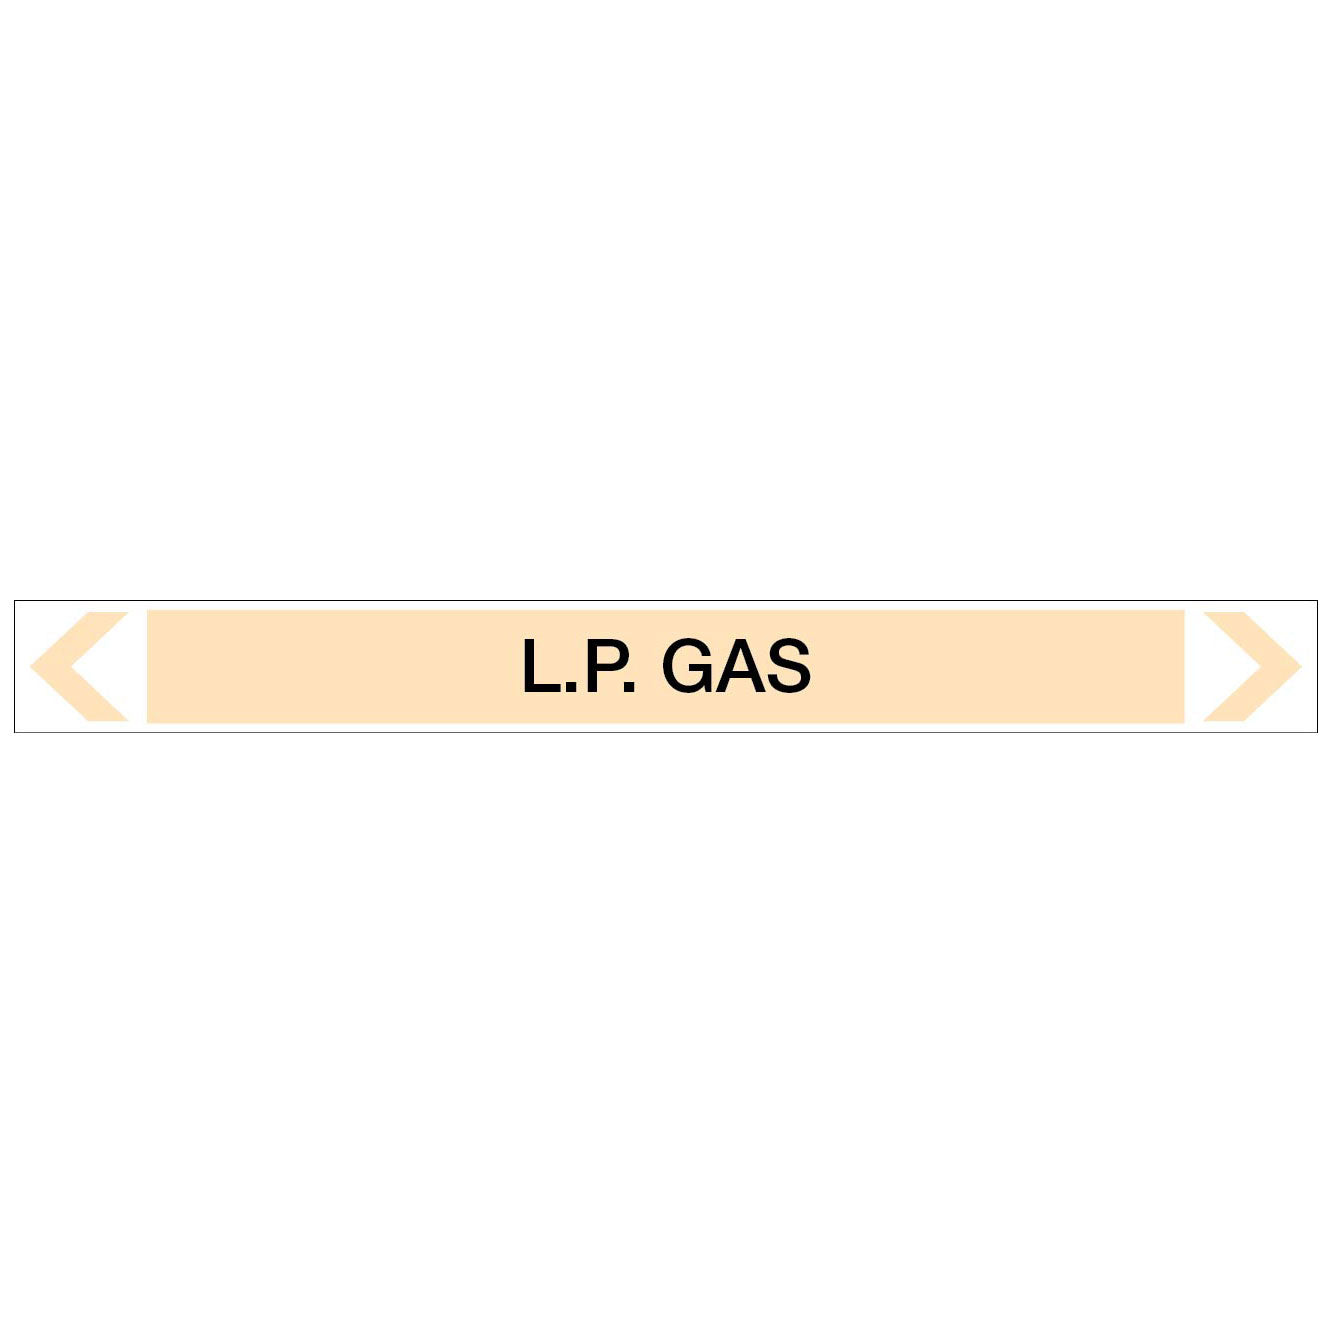 Gases - L.P. Gas - Pipe Marker Sticker